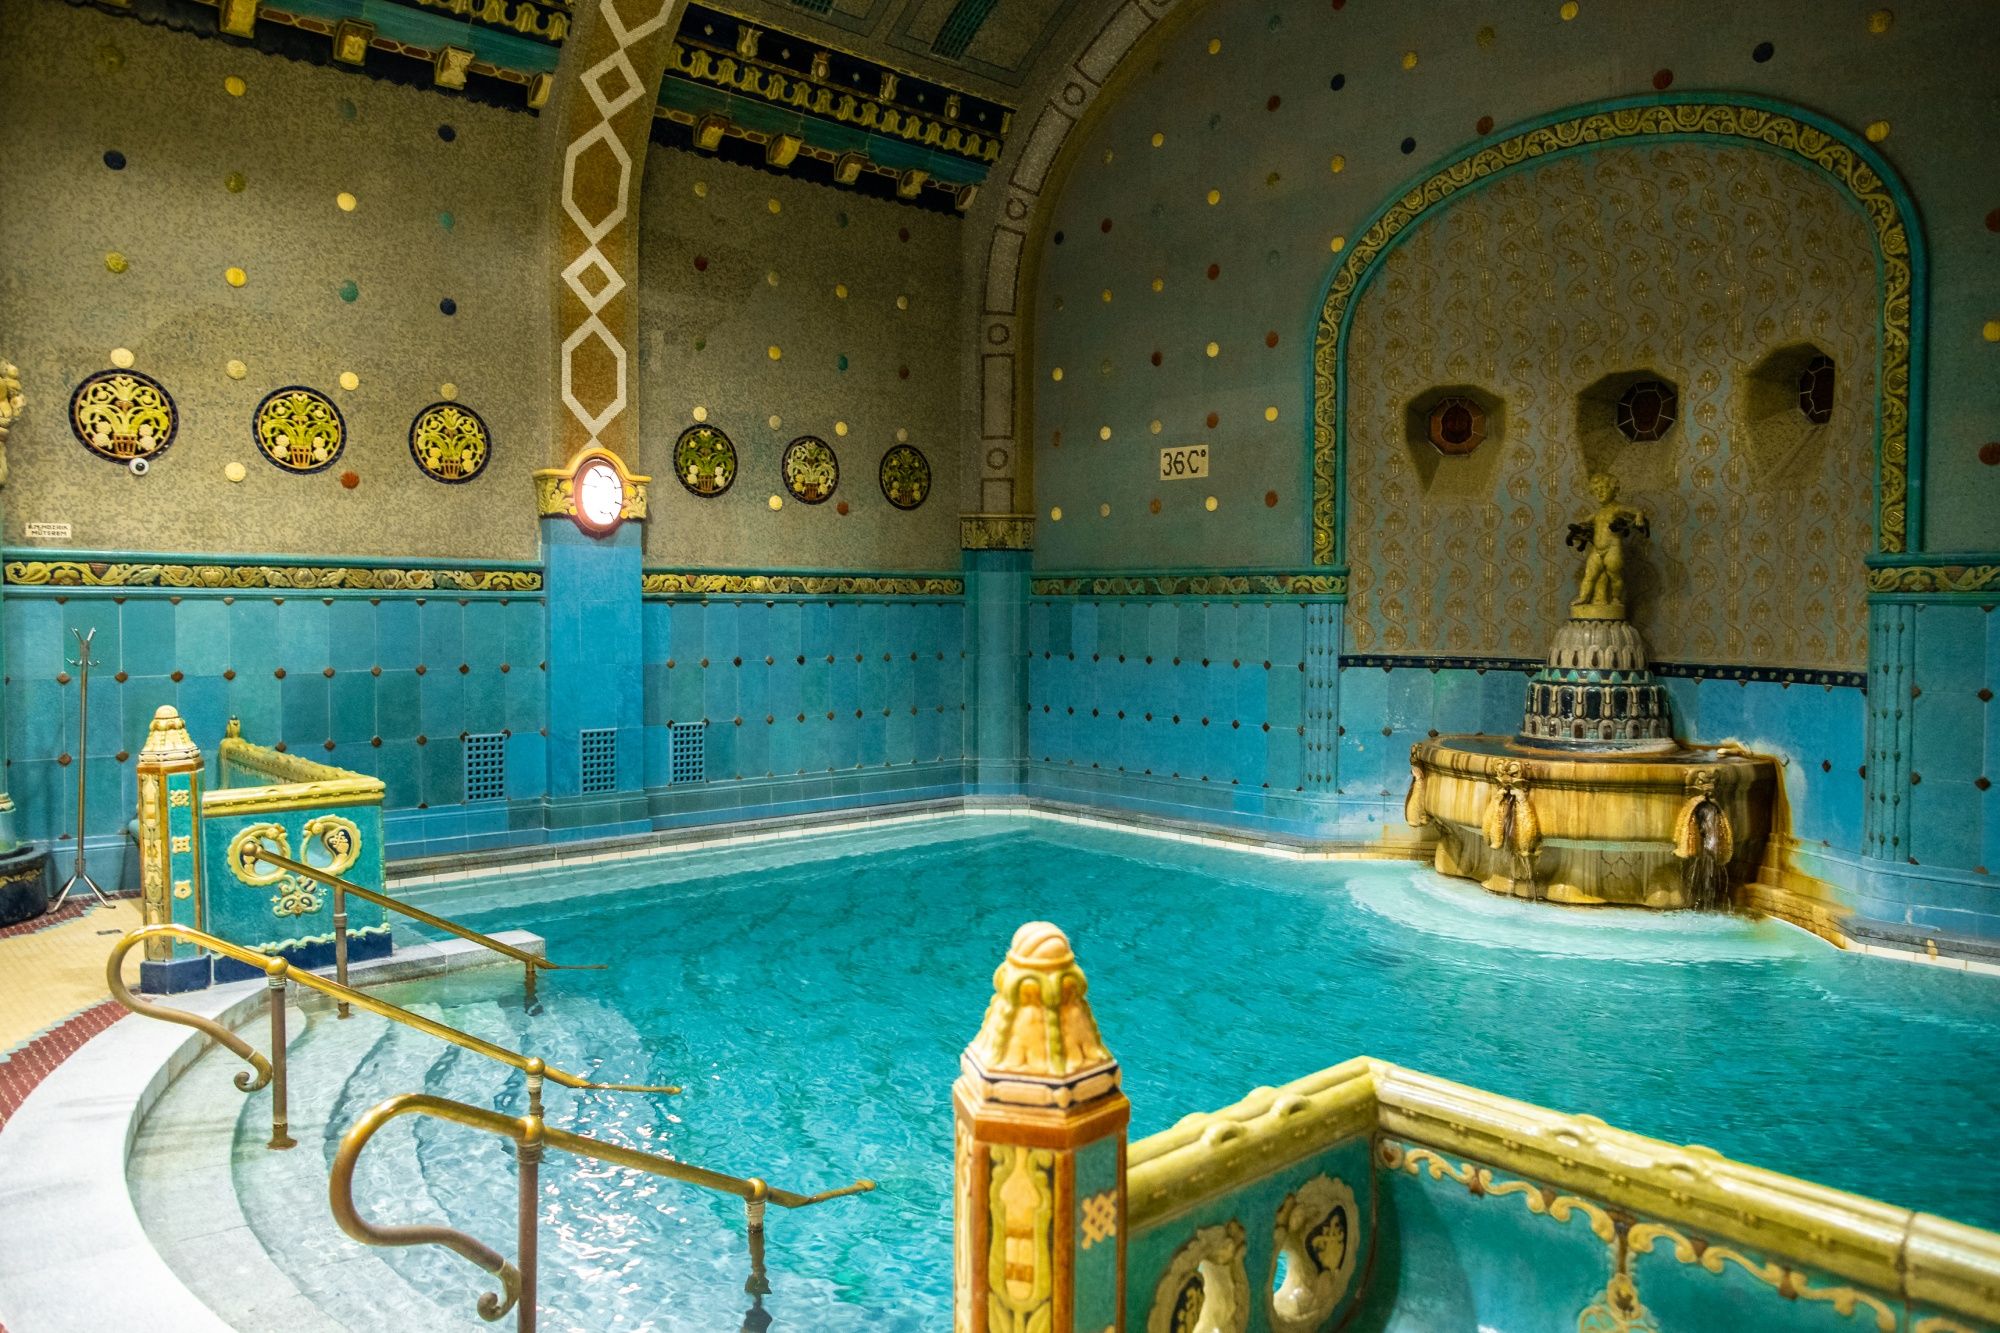 Gellért Bath es uno de los balnearios más impresionantes de Hungría